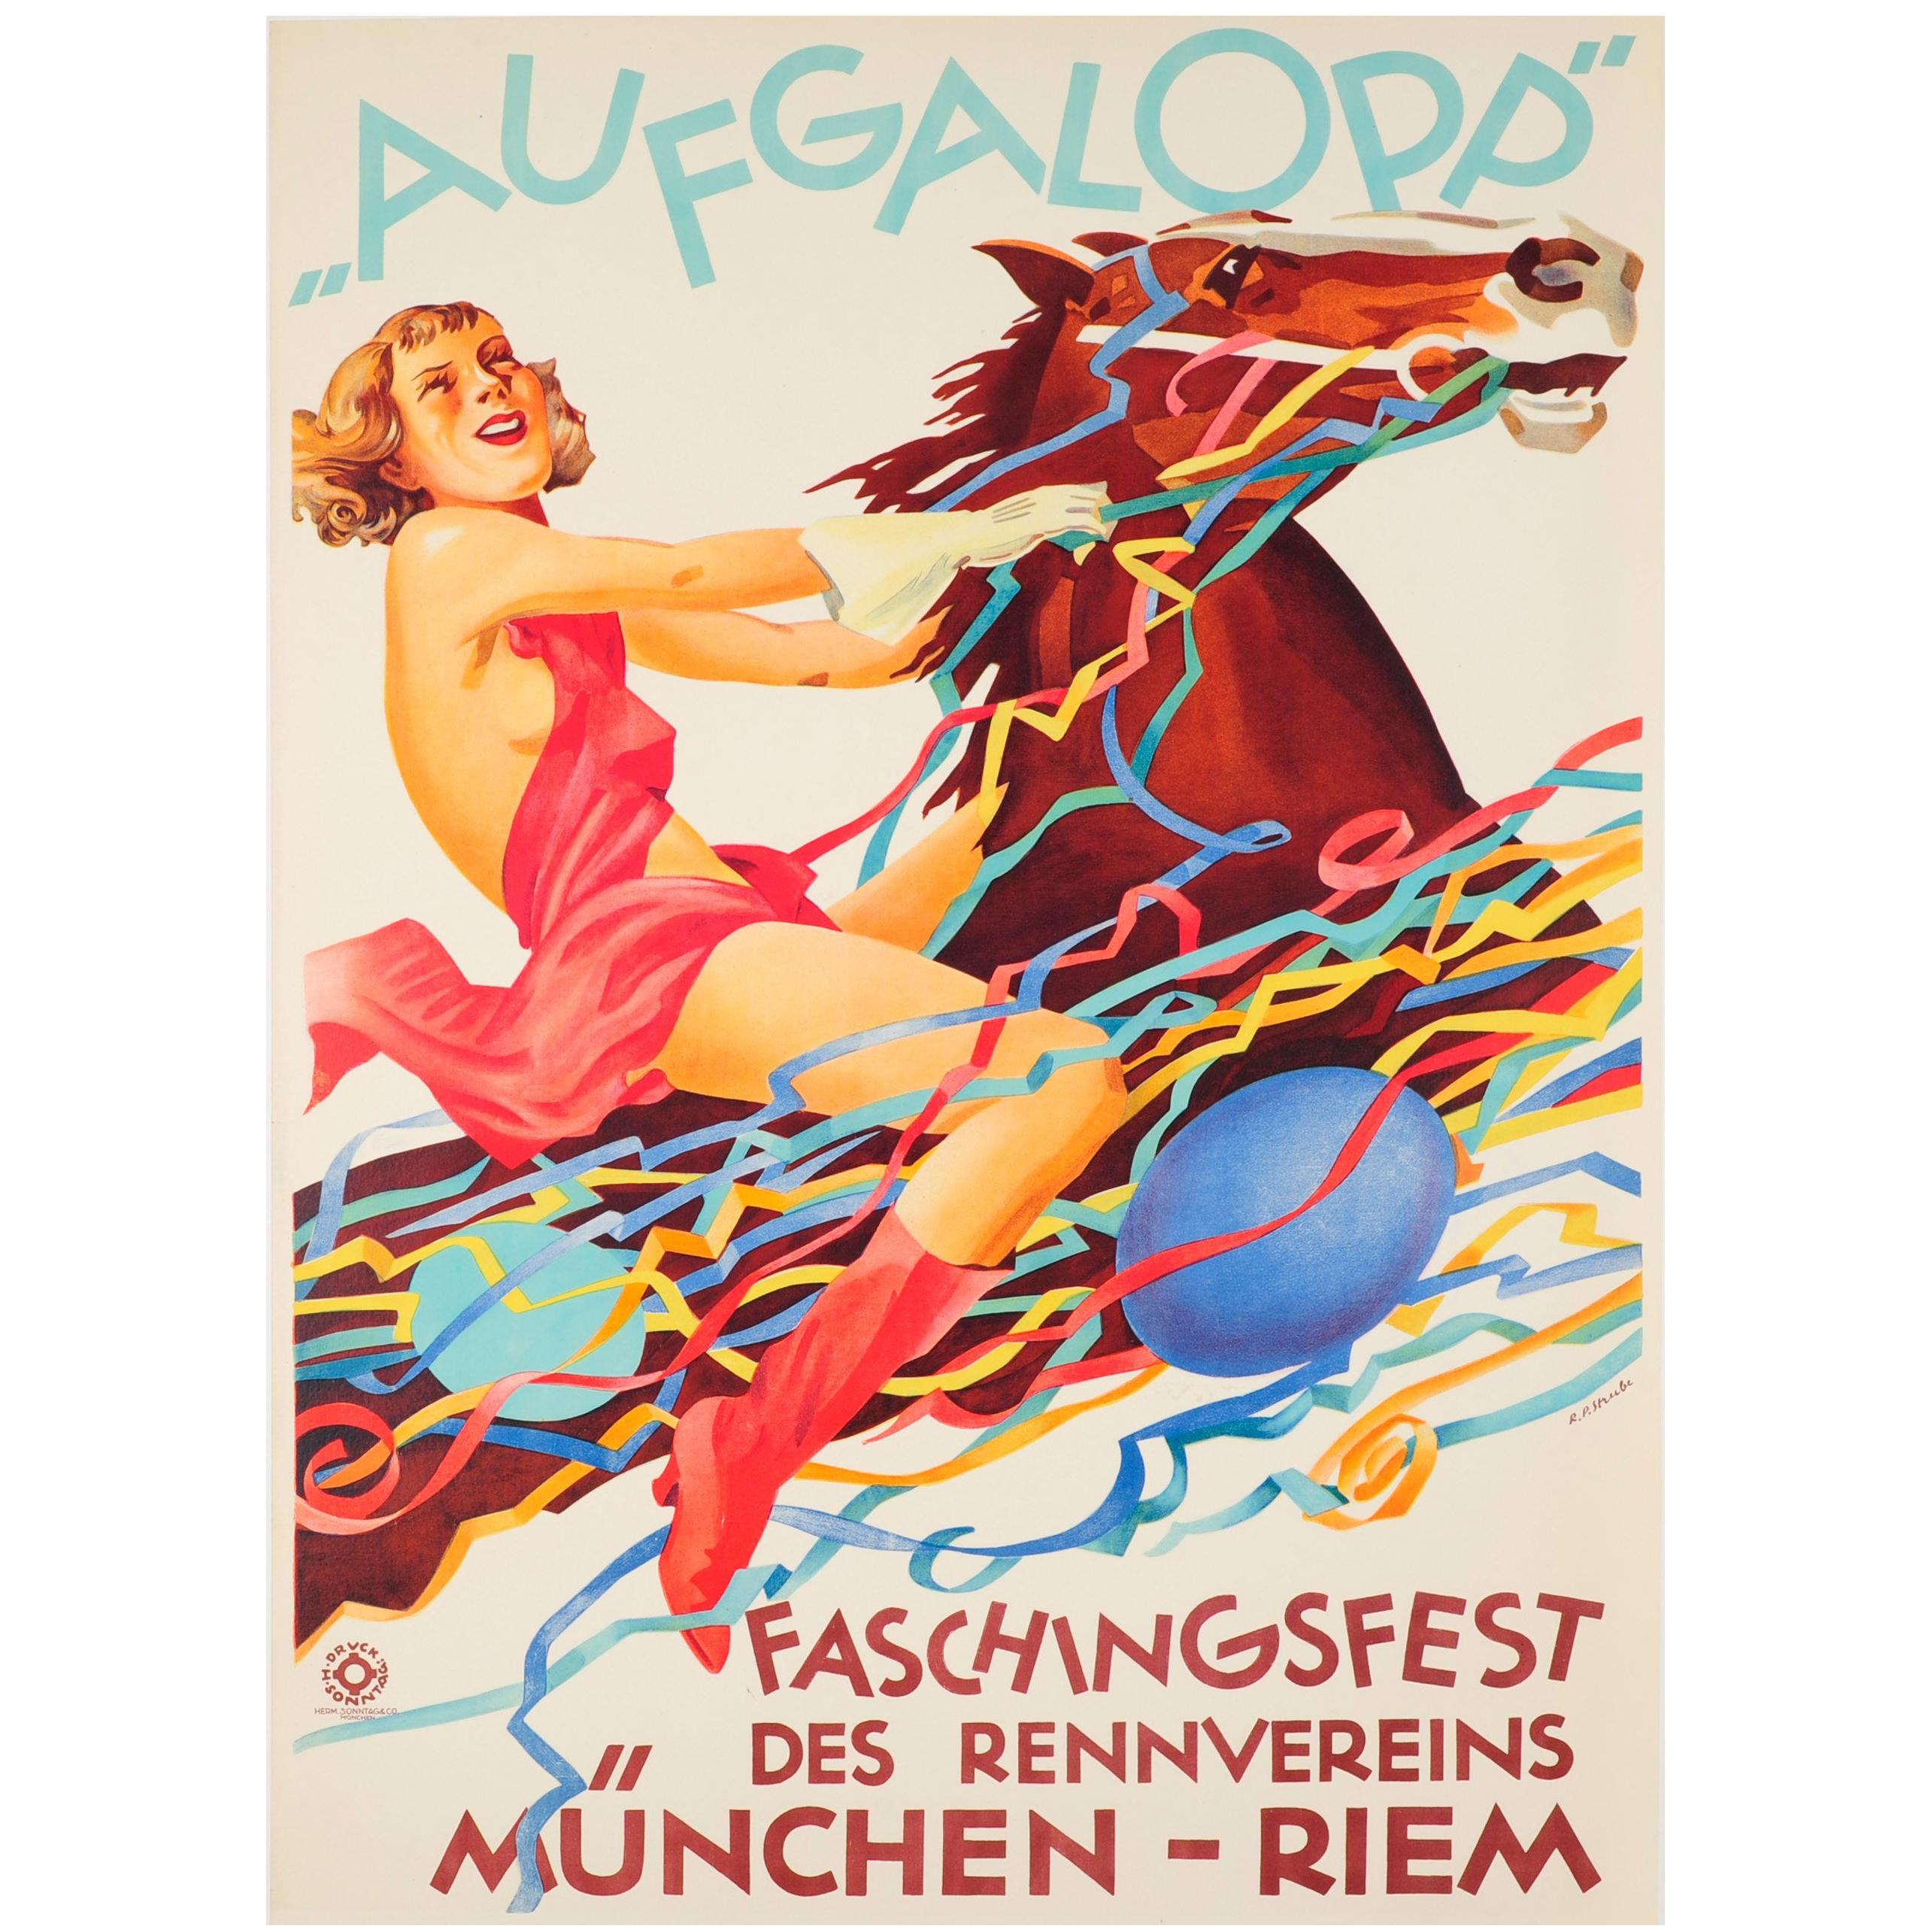 Original Vintage-Poster für das Faschingsfest München mit Pferd von Aufgalopp